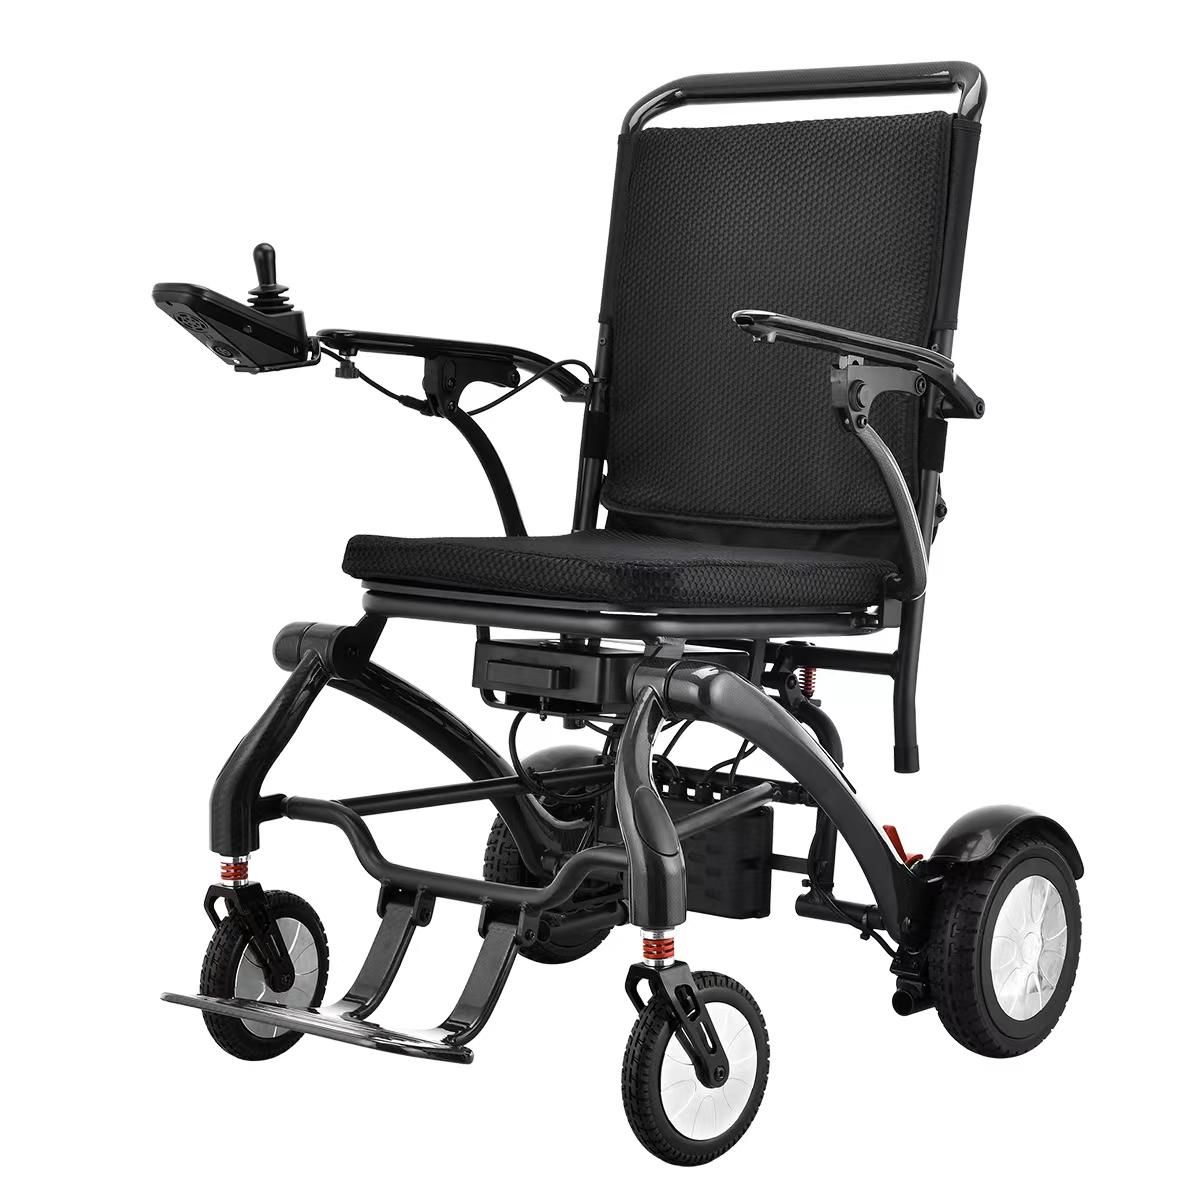 Pe ce ar trebui să se concentreze bătrânii atunci când folosesc pentru vânzare un scaun cu rotile din fibră de carbon?